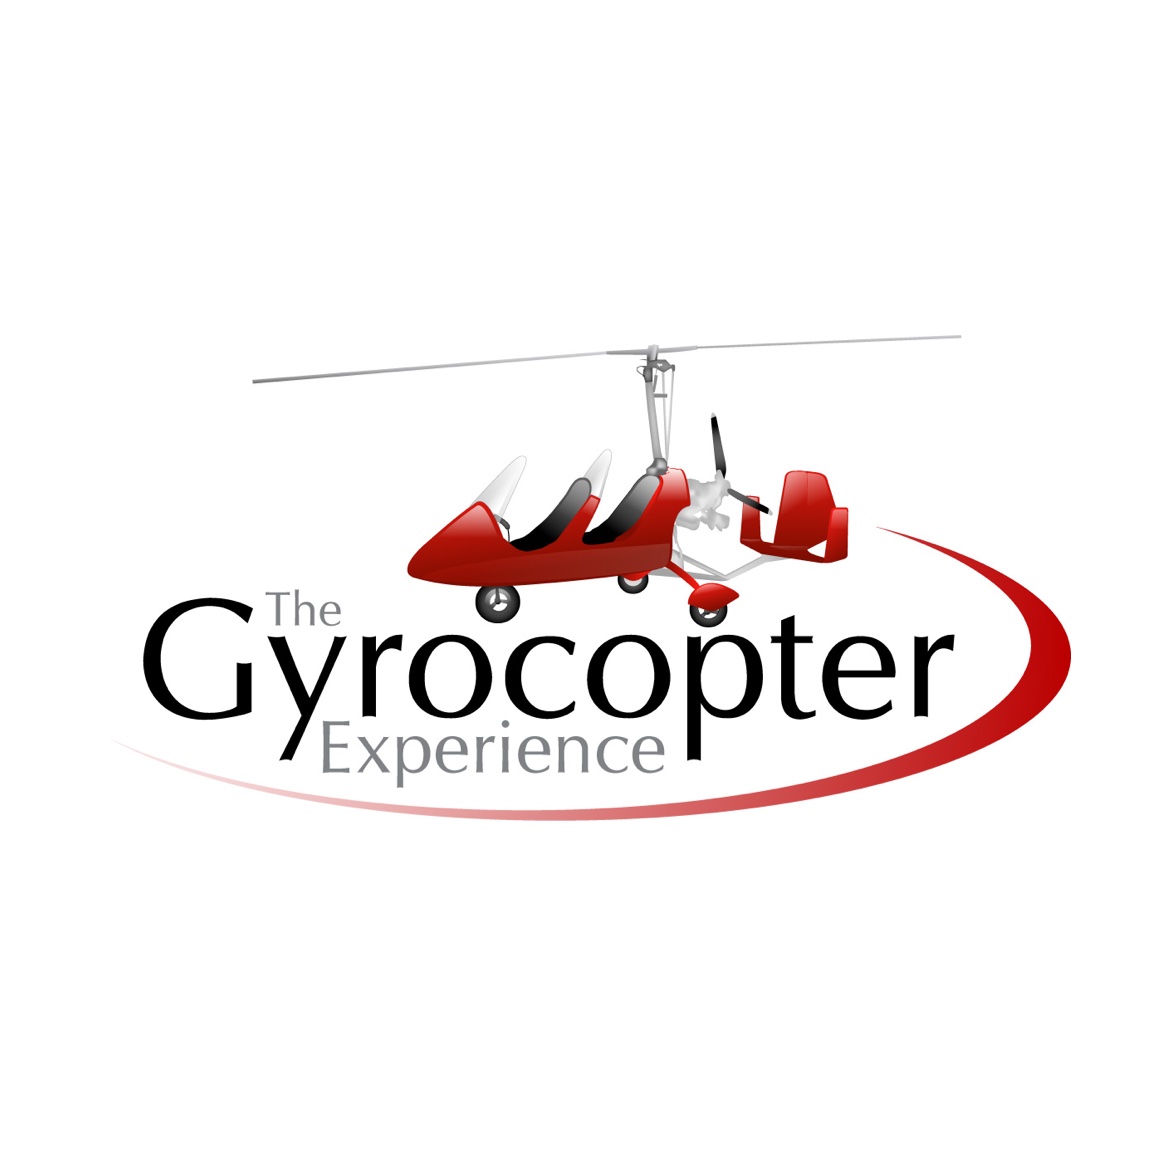 La experiencia de Gyrocopter - Londres Este